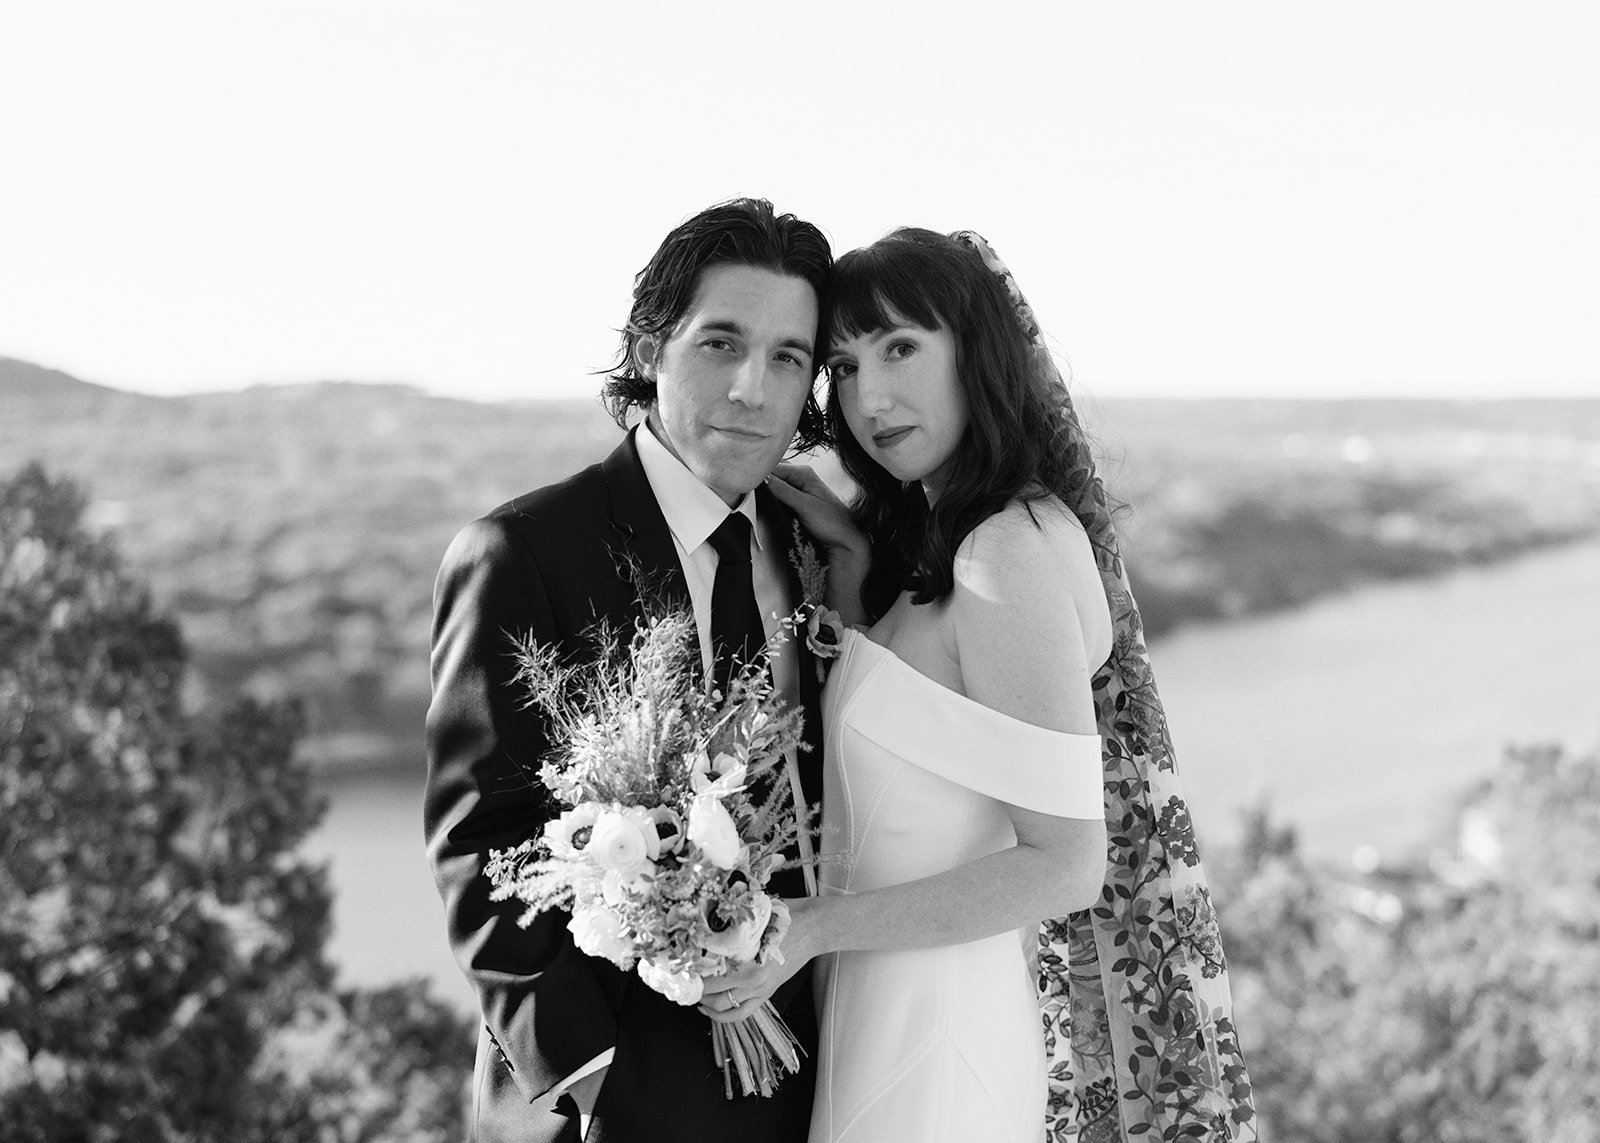 Best-Austin-Wedding-Photographers-Elopement-Film-35mm-Asheville-Santa-Barbara-Laguna-Gloria-27.jpg